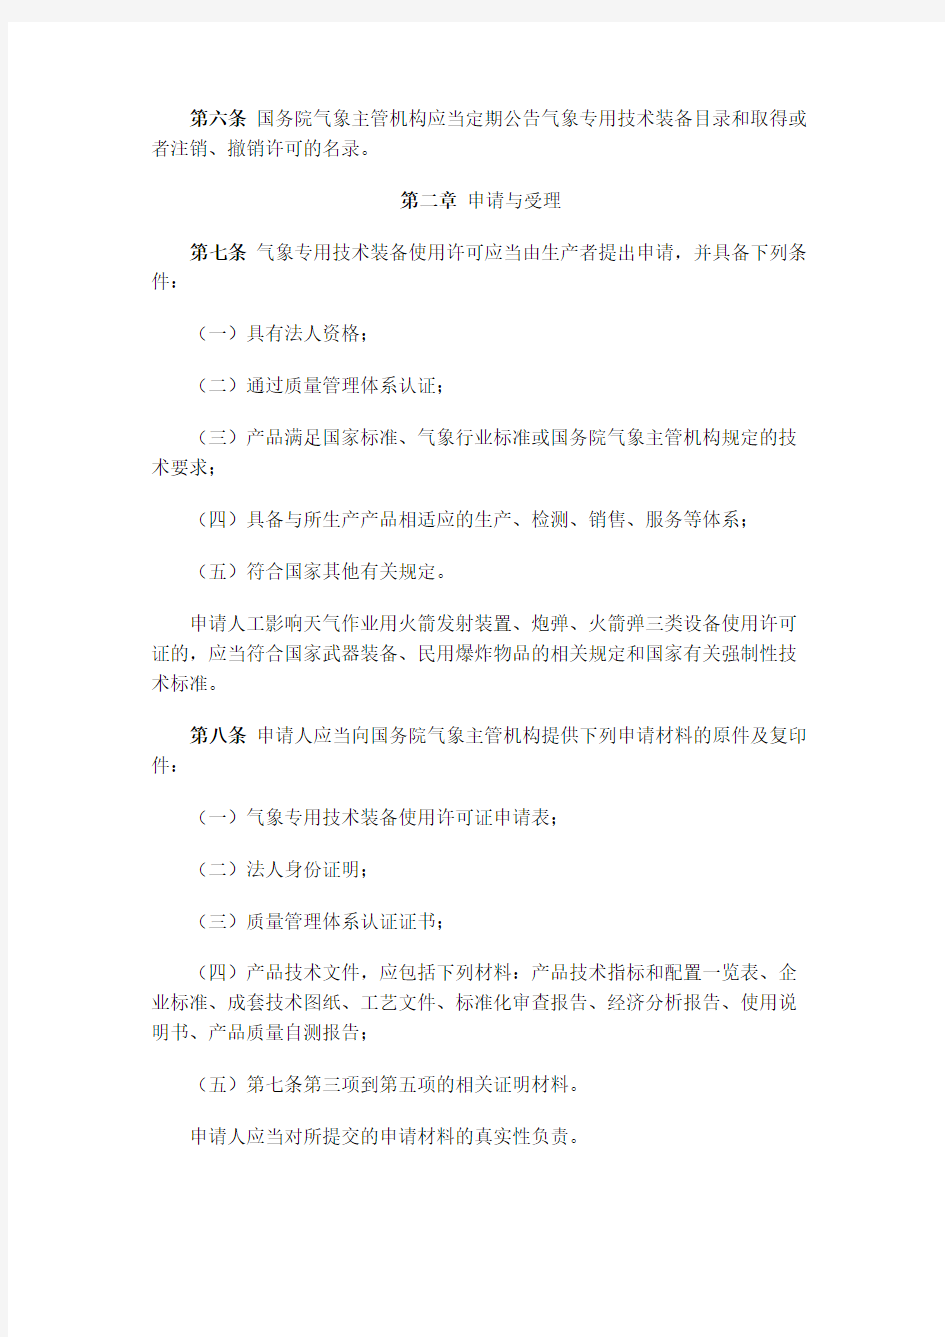 中国气象局第28号令《气象专用技术装备使用许可管理办法》